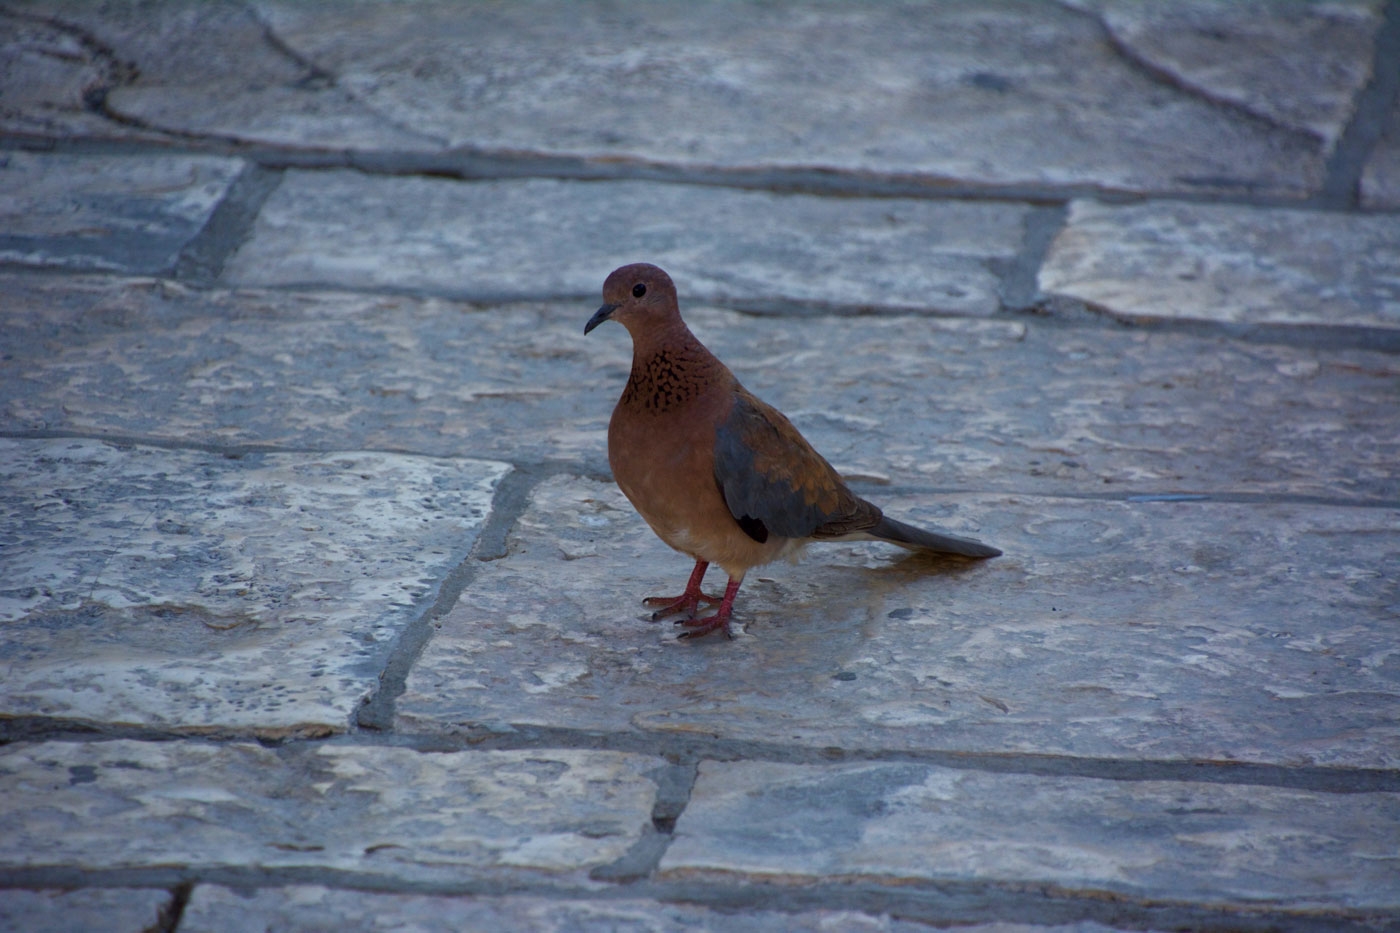 Jerusalem Dove in Old City